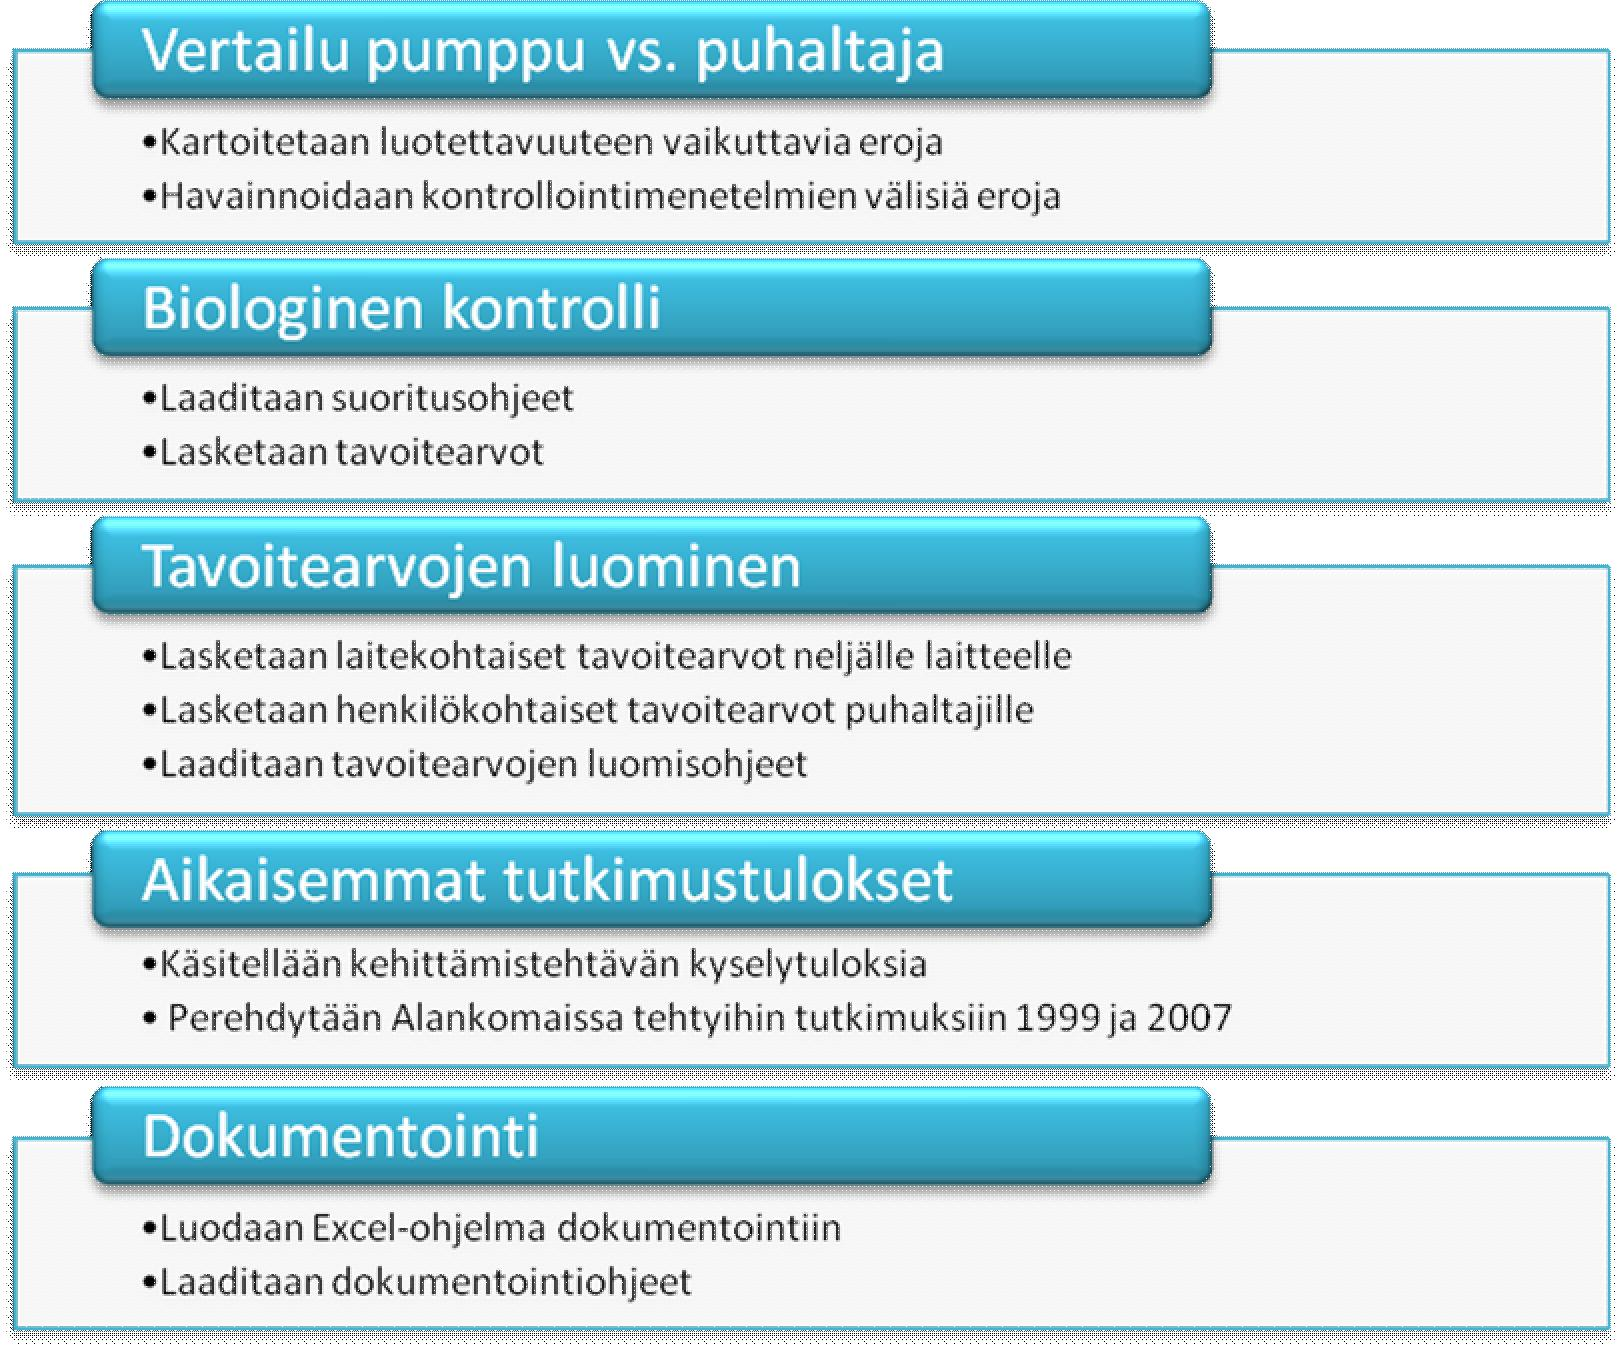 4 Olemme syksyllä 2009 tekemässämme kehittämistehtävässä Hyvinkään yksikön kanssa yhteistyössä laatineet verkkokyselyn ja kartoittaneet biologisen kontrollin käyttötapoja ja yleisyyttä Suomessa.